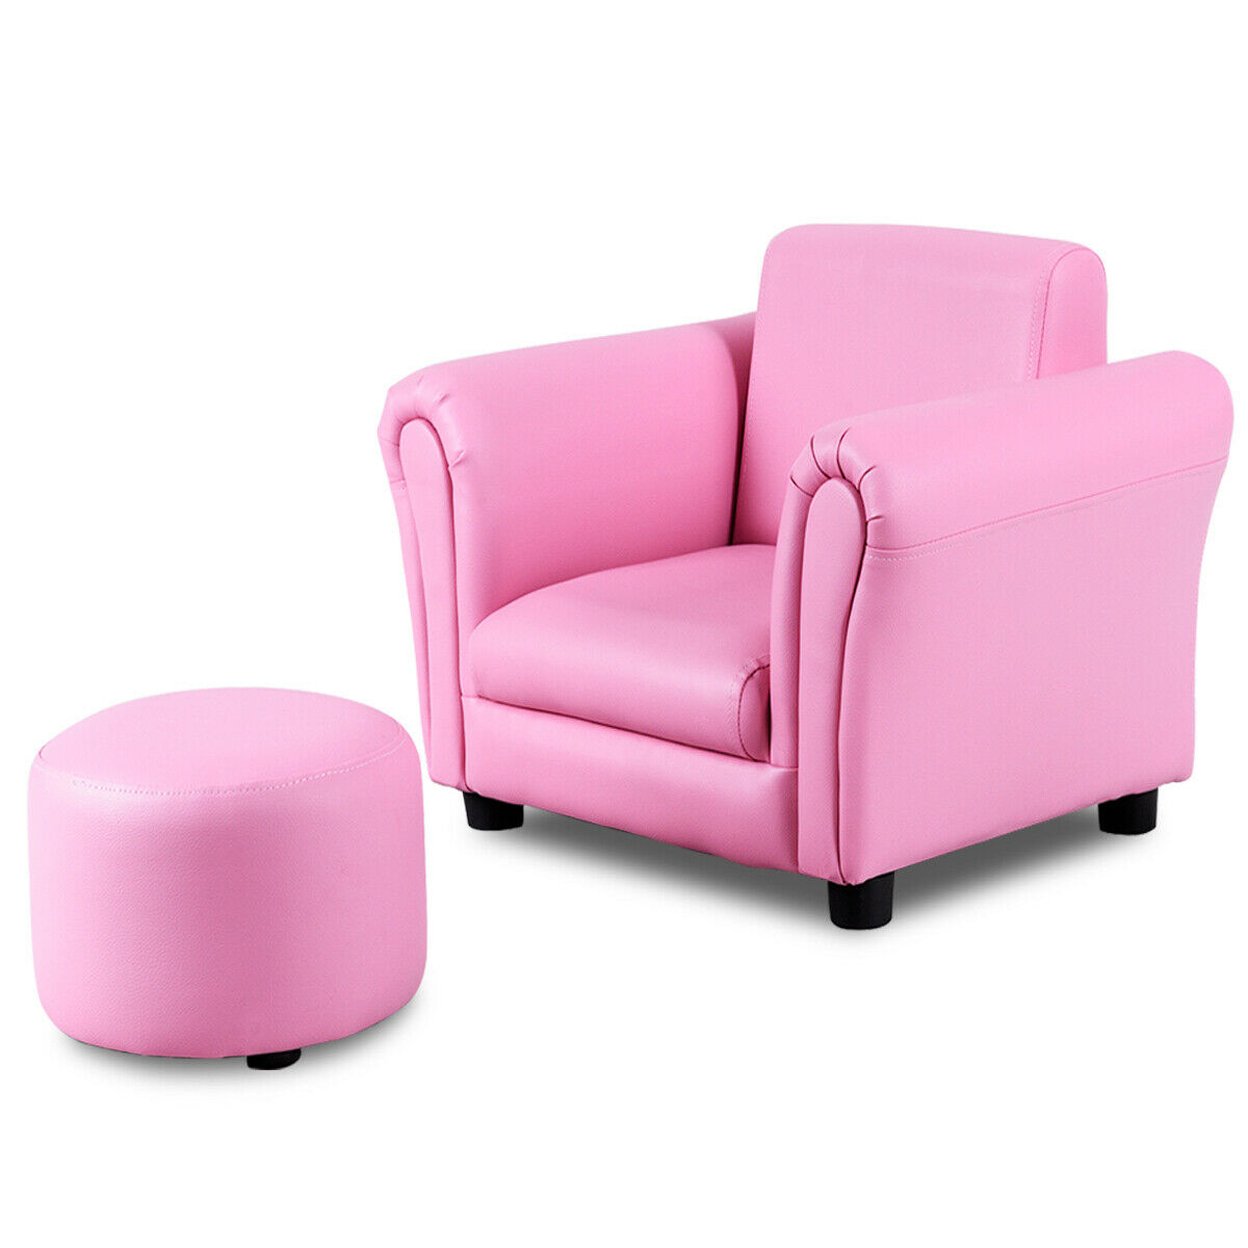 Costway Pink Kids Sofa Armrest Chair Couch Children Toddler Birthday